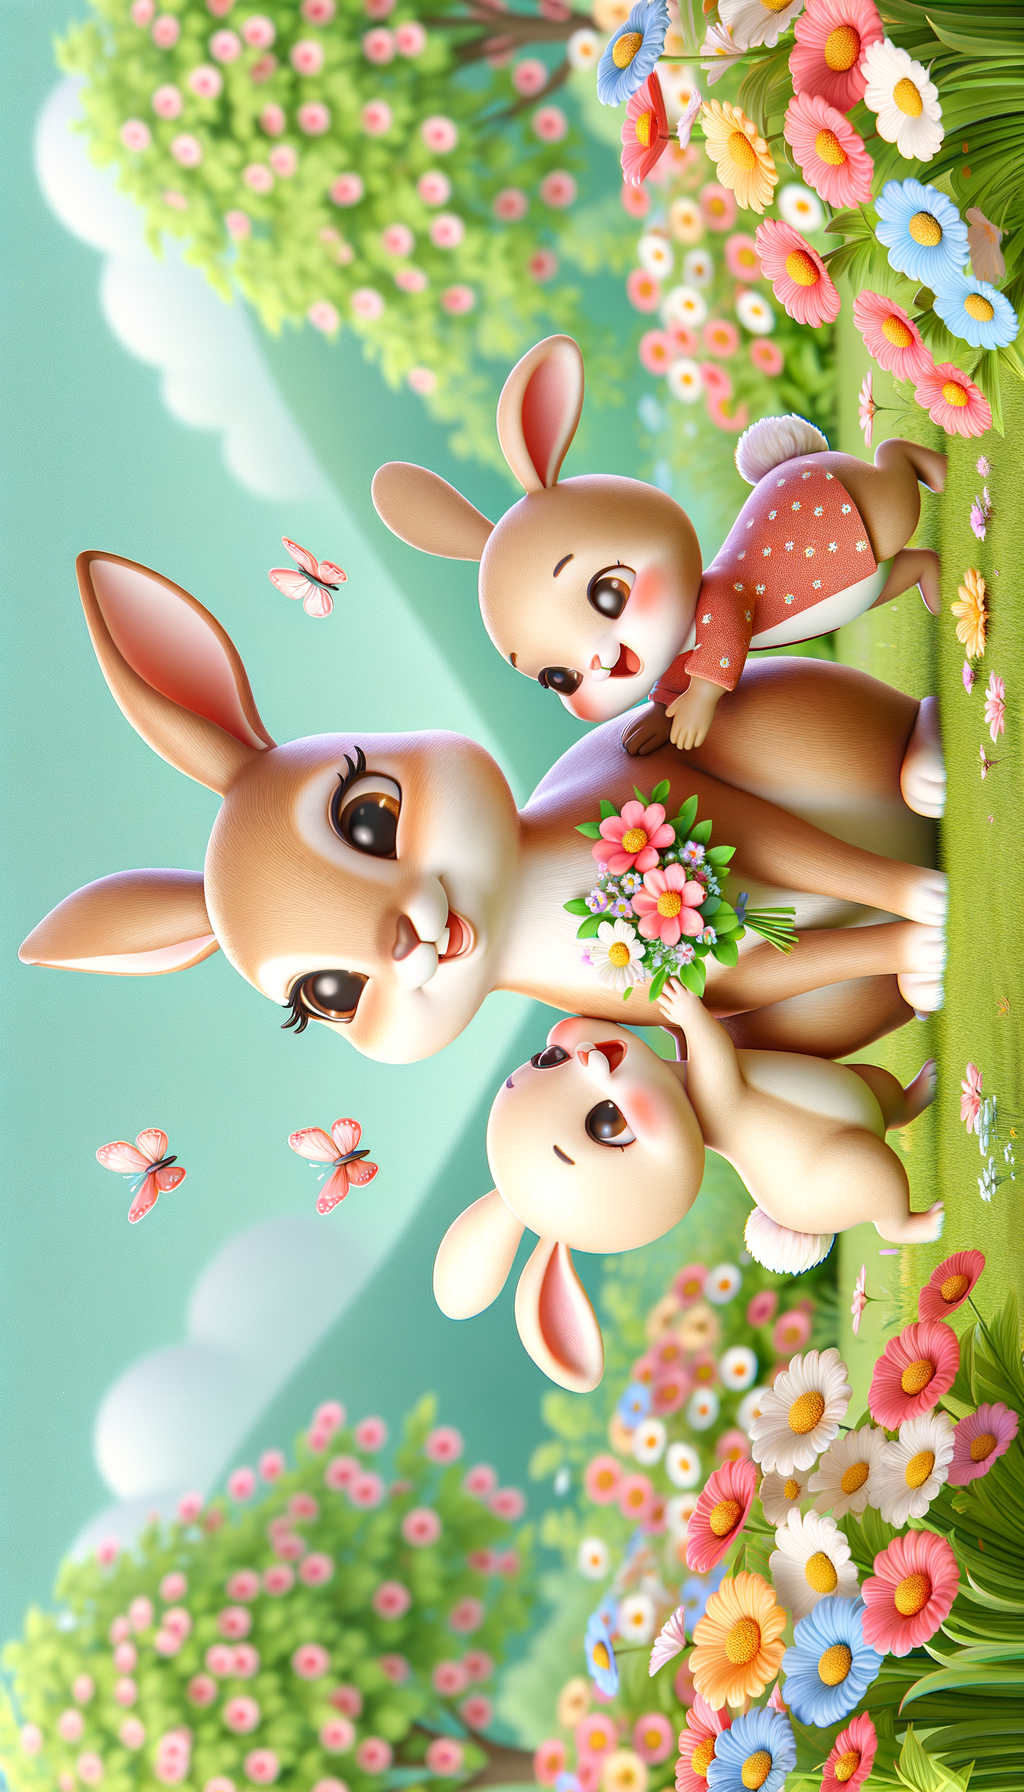 маму зайчиху обнимают два маленьких зайчика и улыбаются и дарят цветы, на заднем фоне цветочная поляна